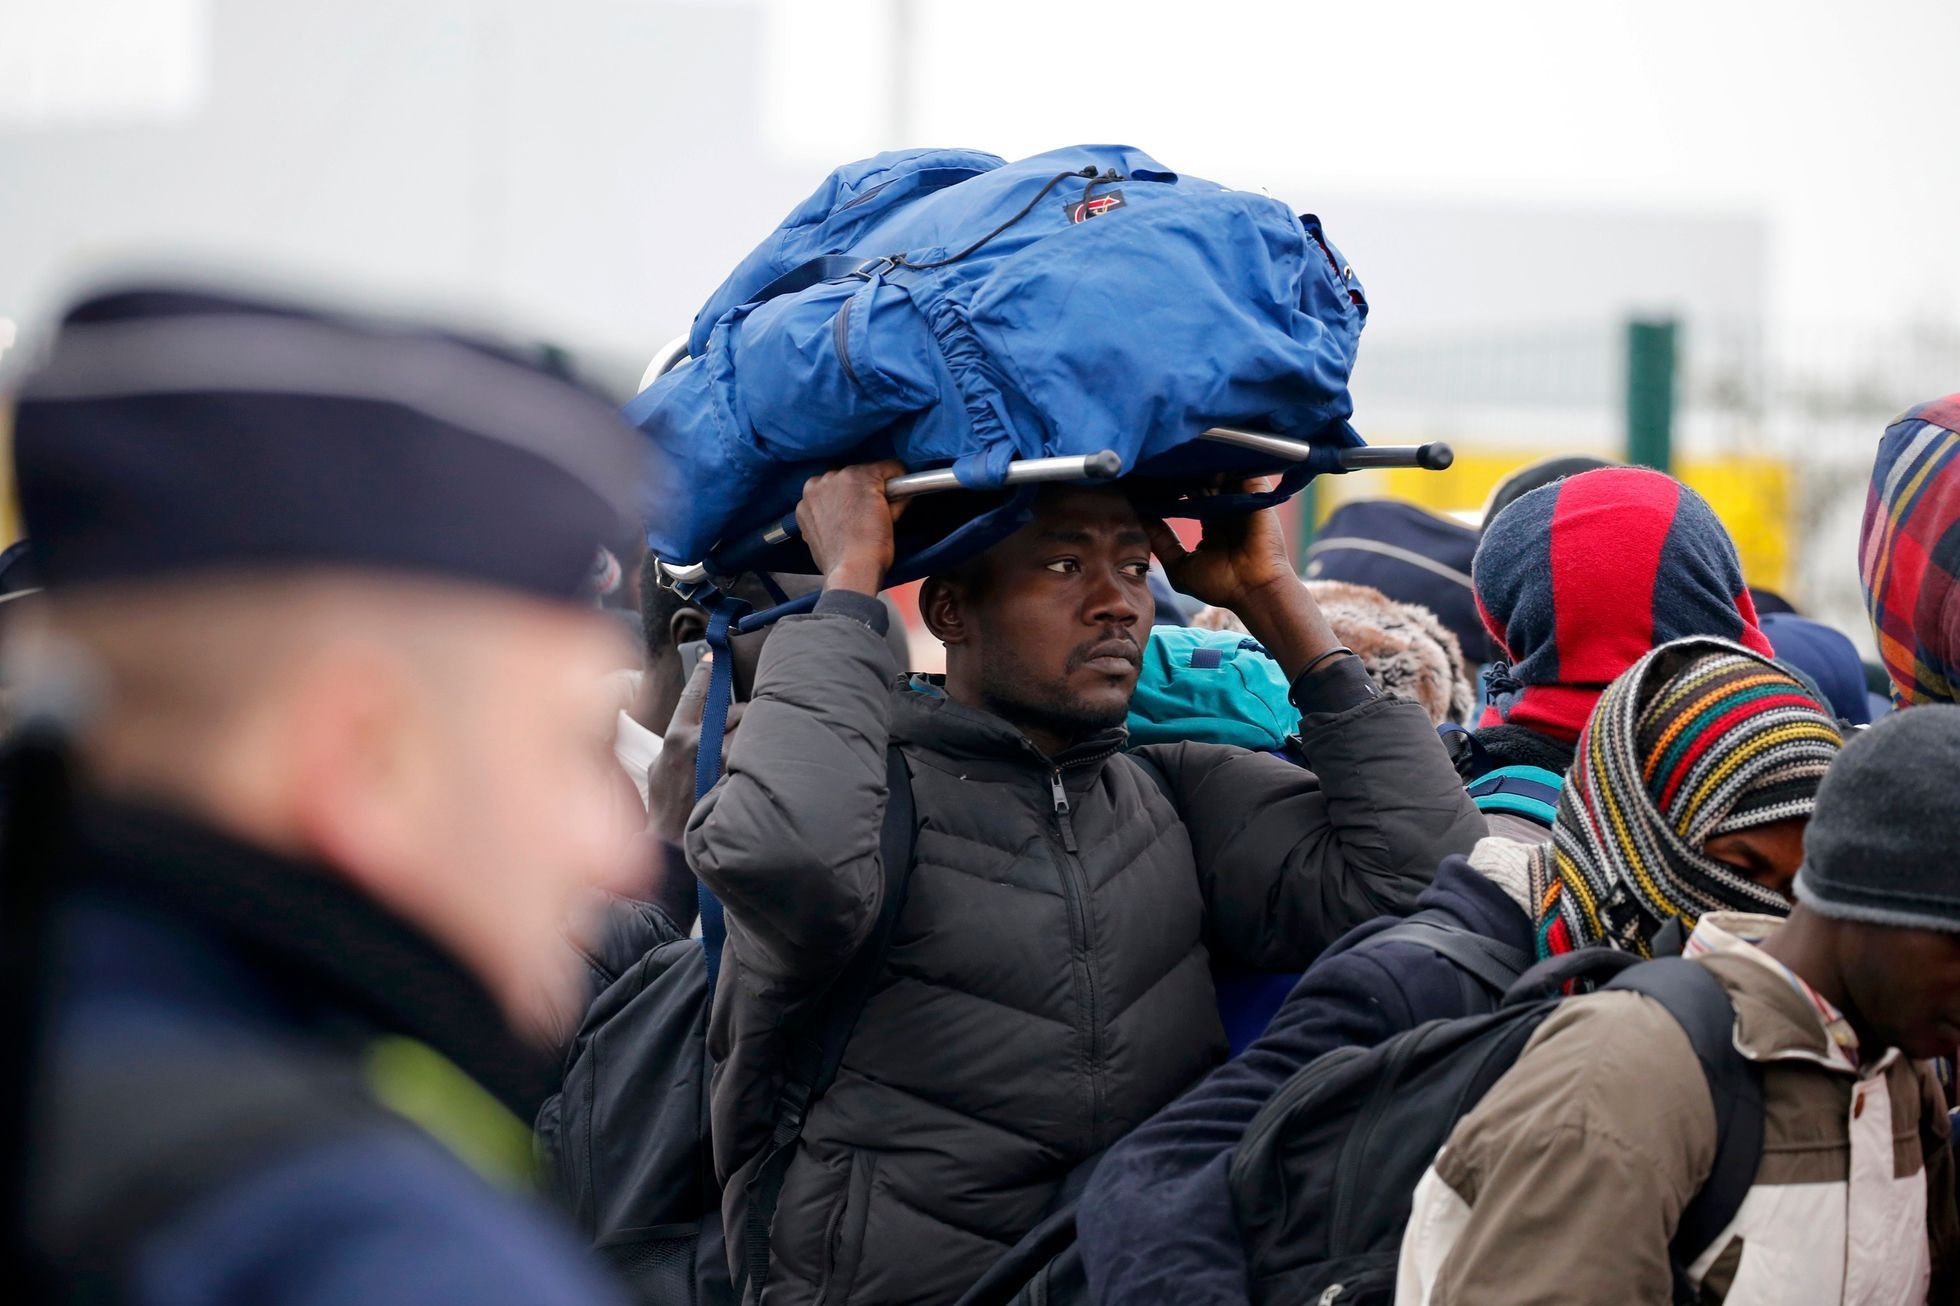 Vyklízení uprchlického tábora v Calais